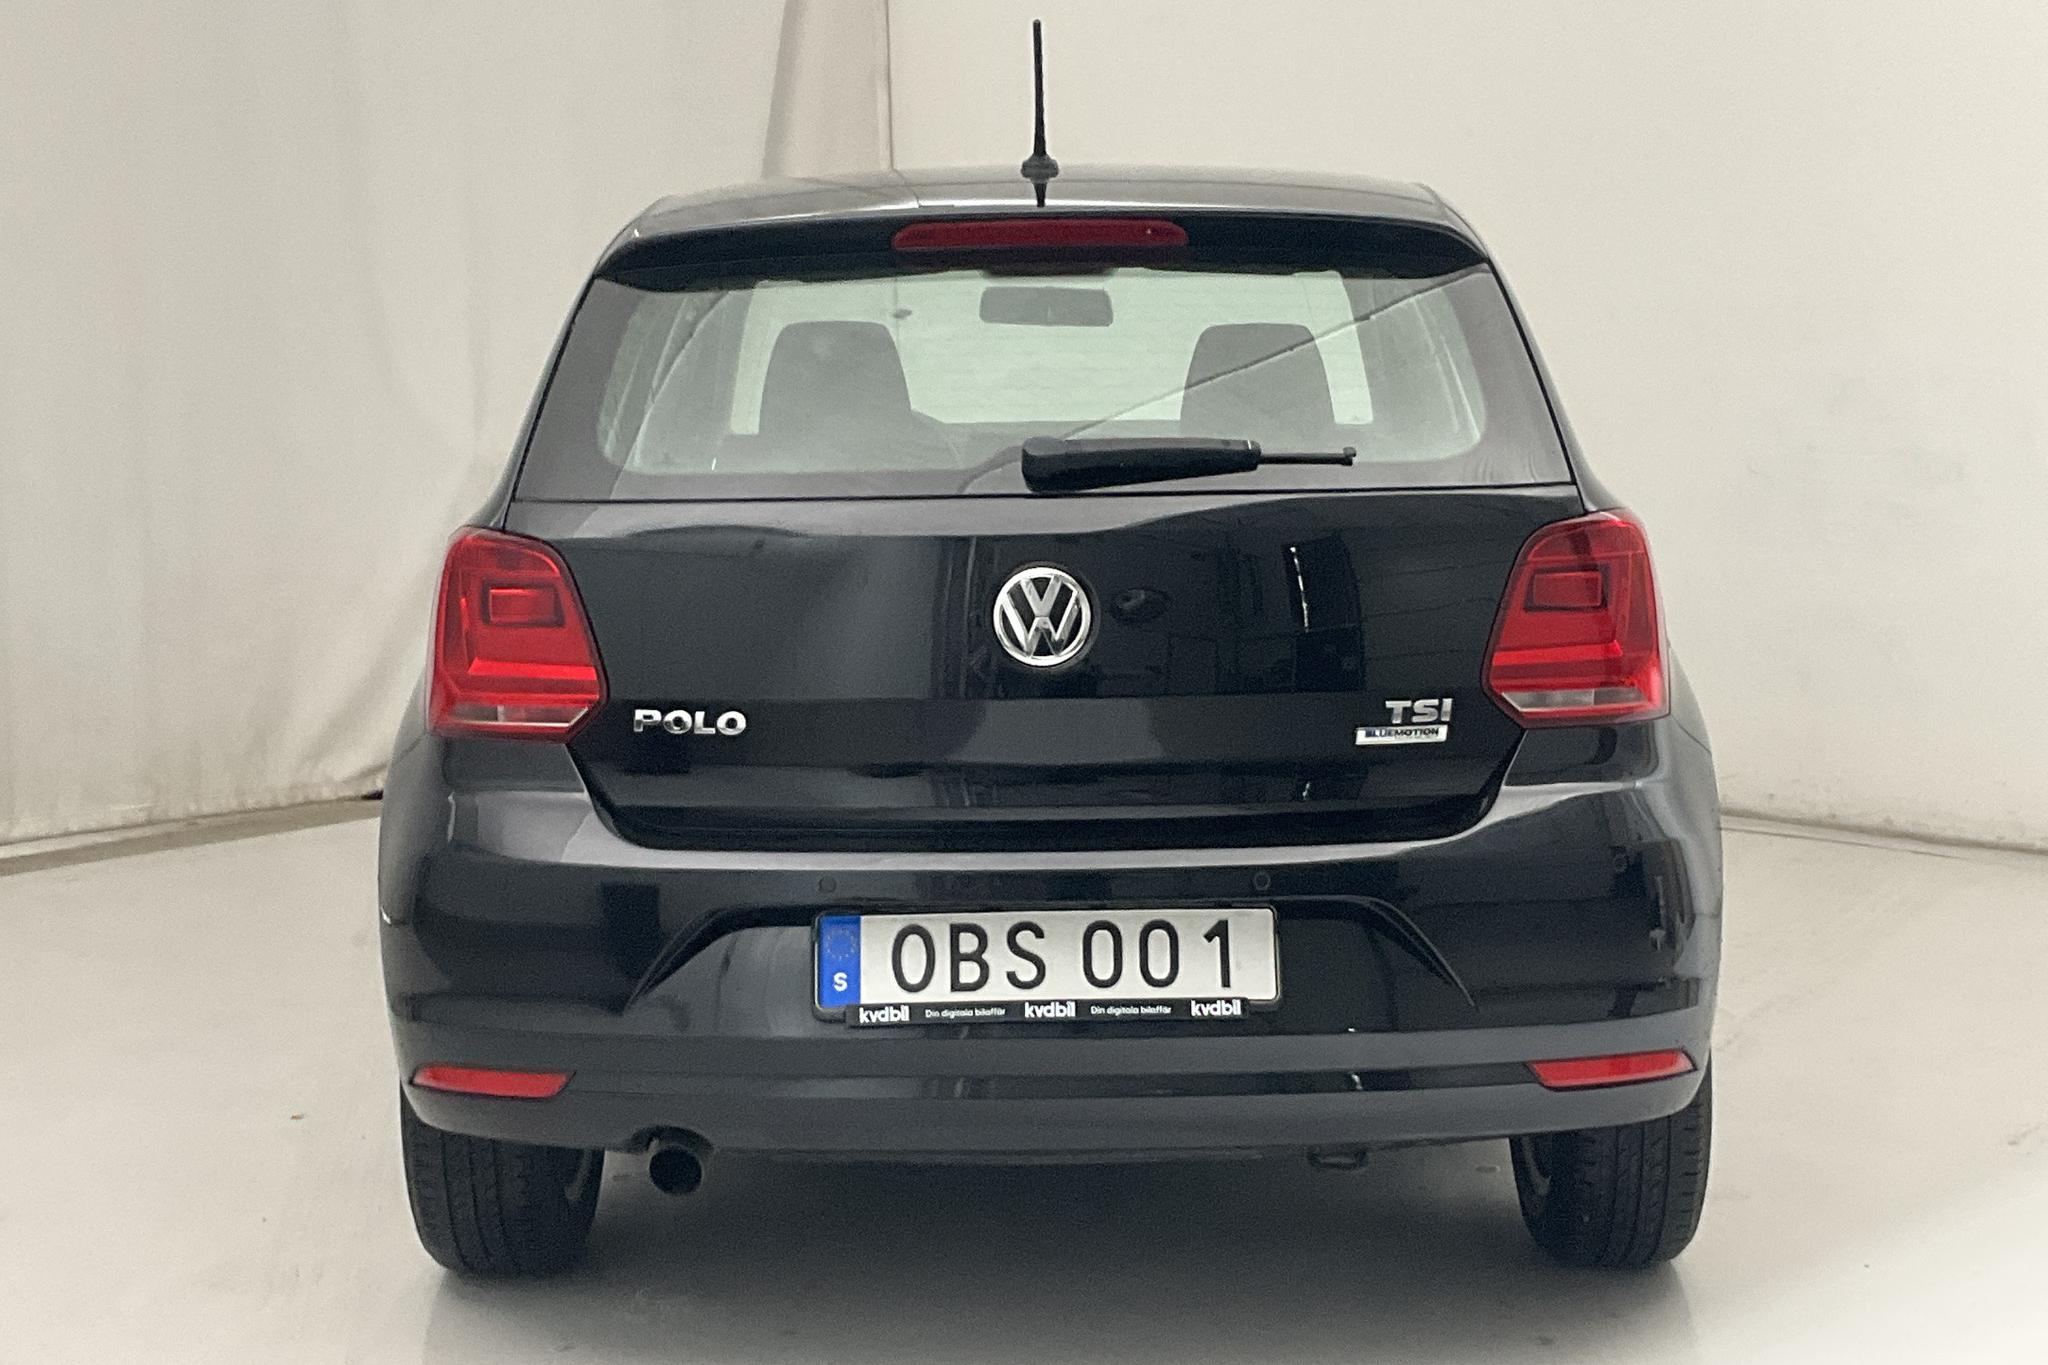 VW Polo 1.2 TSI 5dr (90hk) - 73 040 km - Automatic - black - 2016